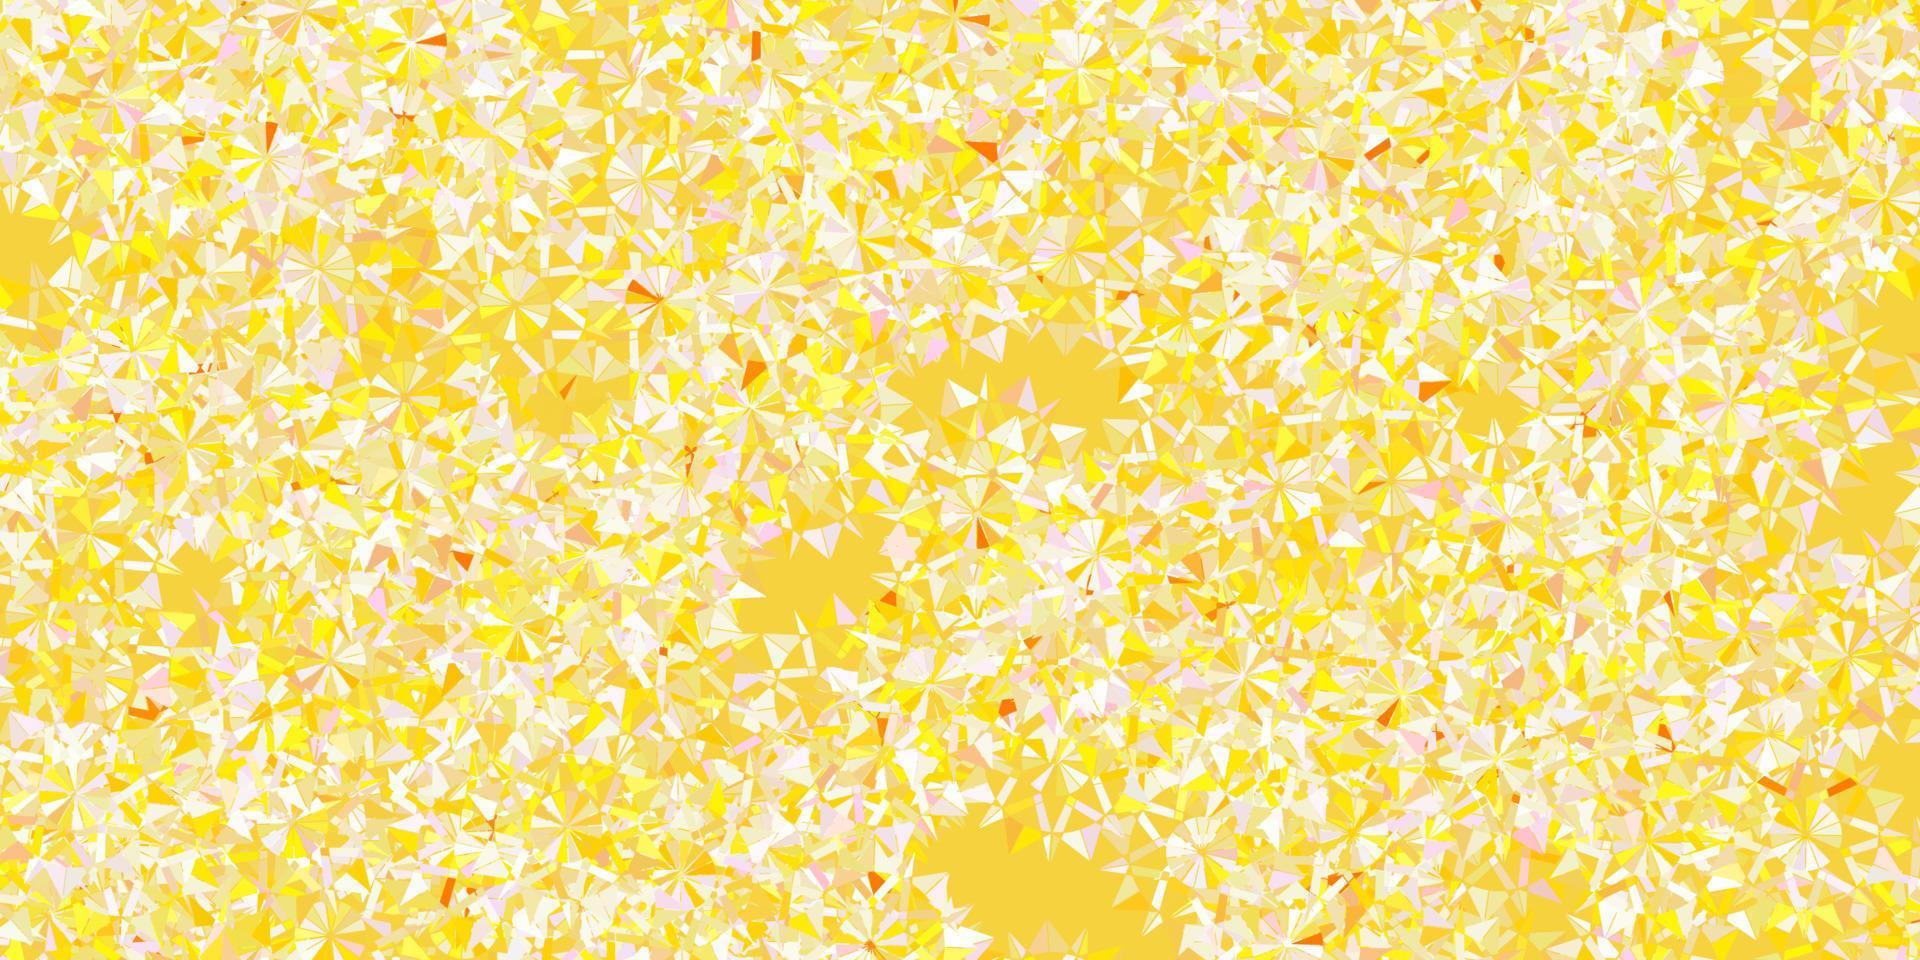 patrón de vector rosa claro, amarillo con copos de nieve de colores.